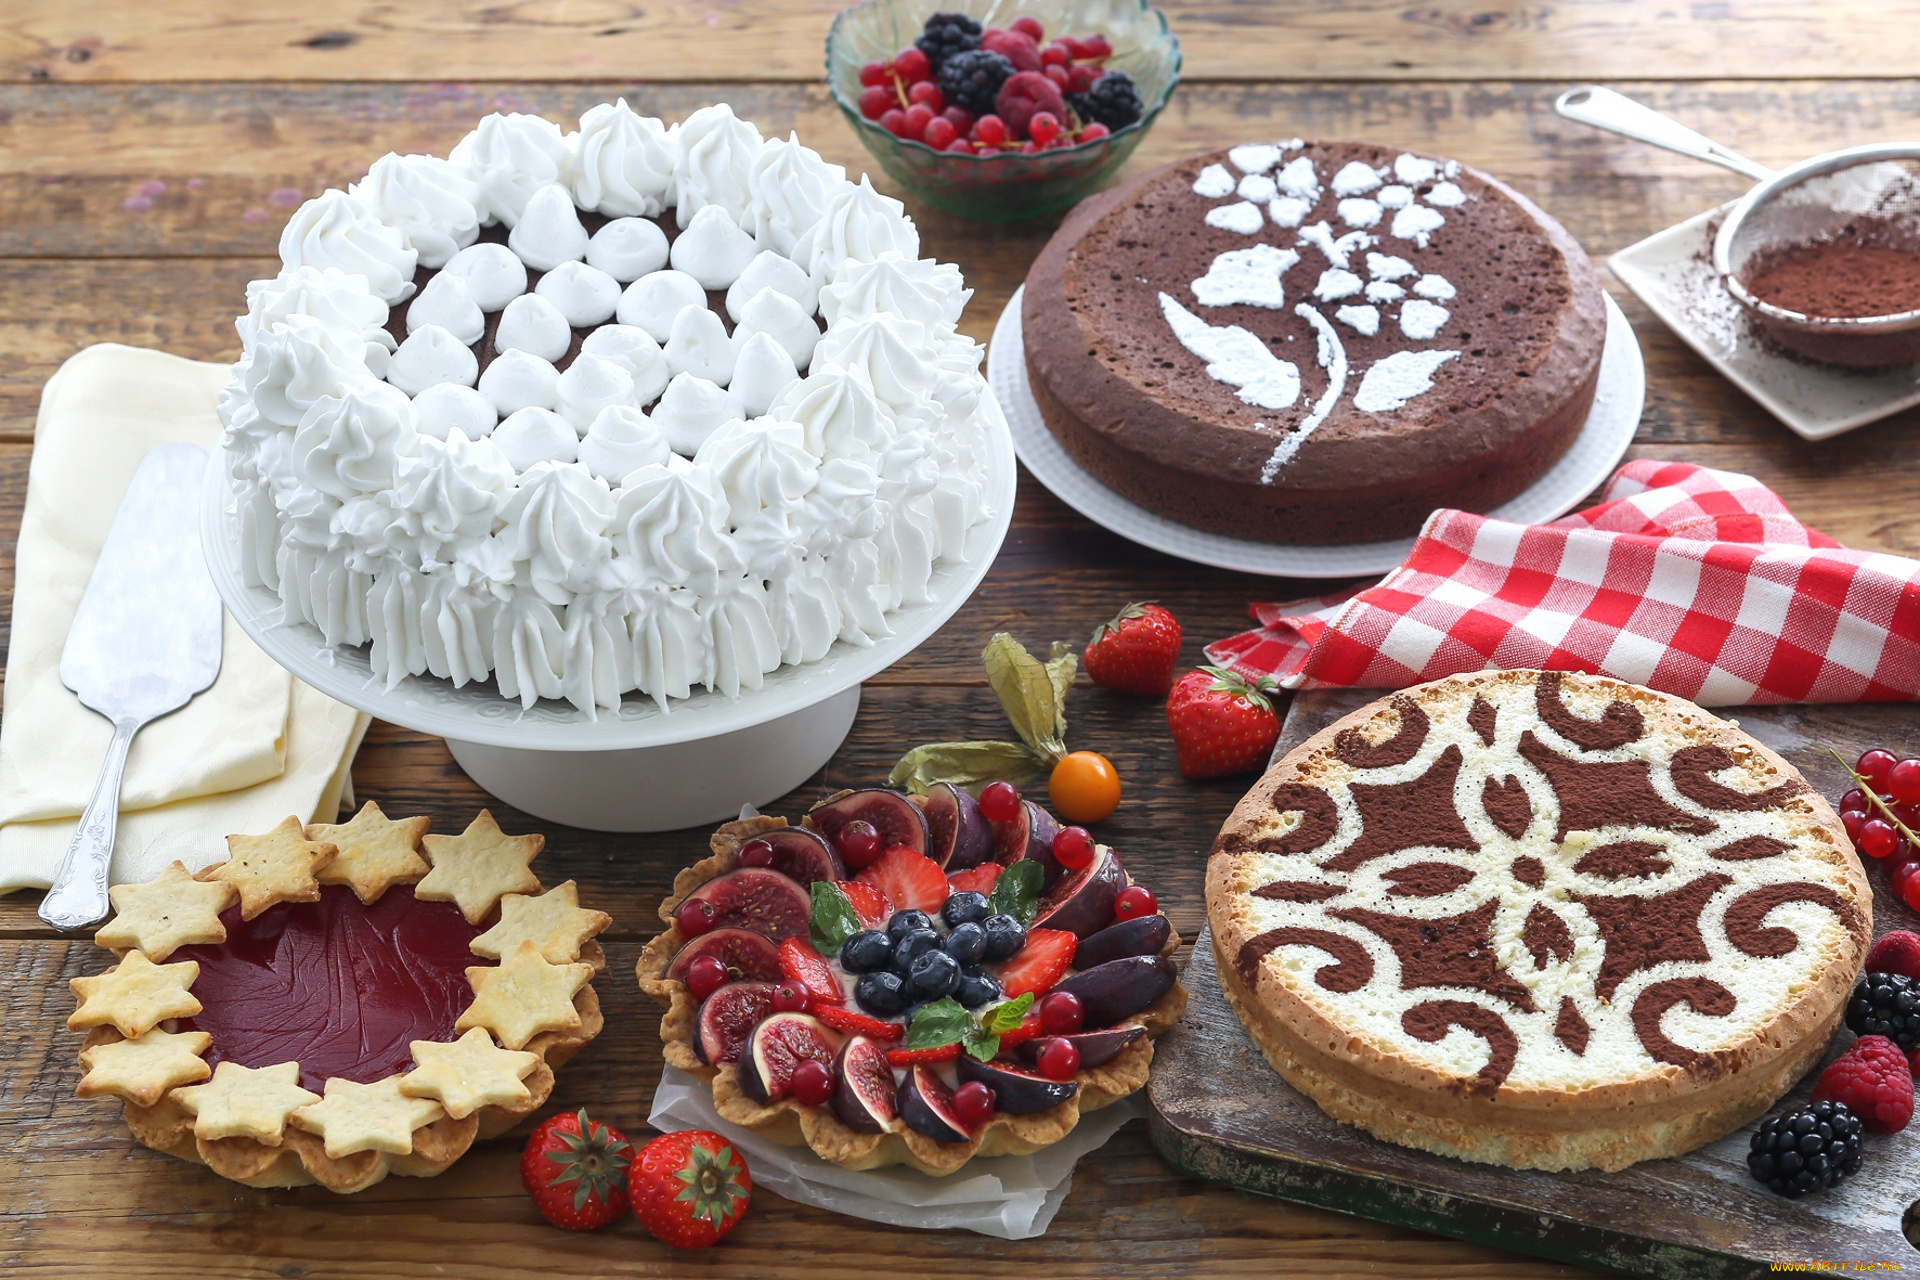 еда, торты, клубника, десерт, sweet, cake, ягоды, сладкое, dessert, выпечка, торт, strawberry, berries, snack, пирожное, крем